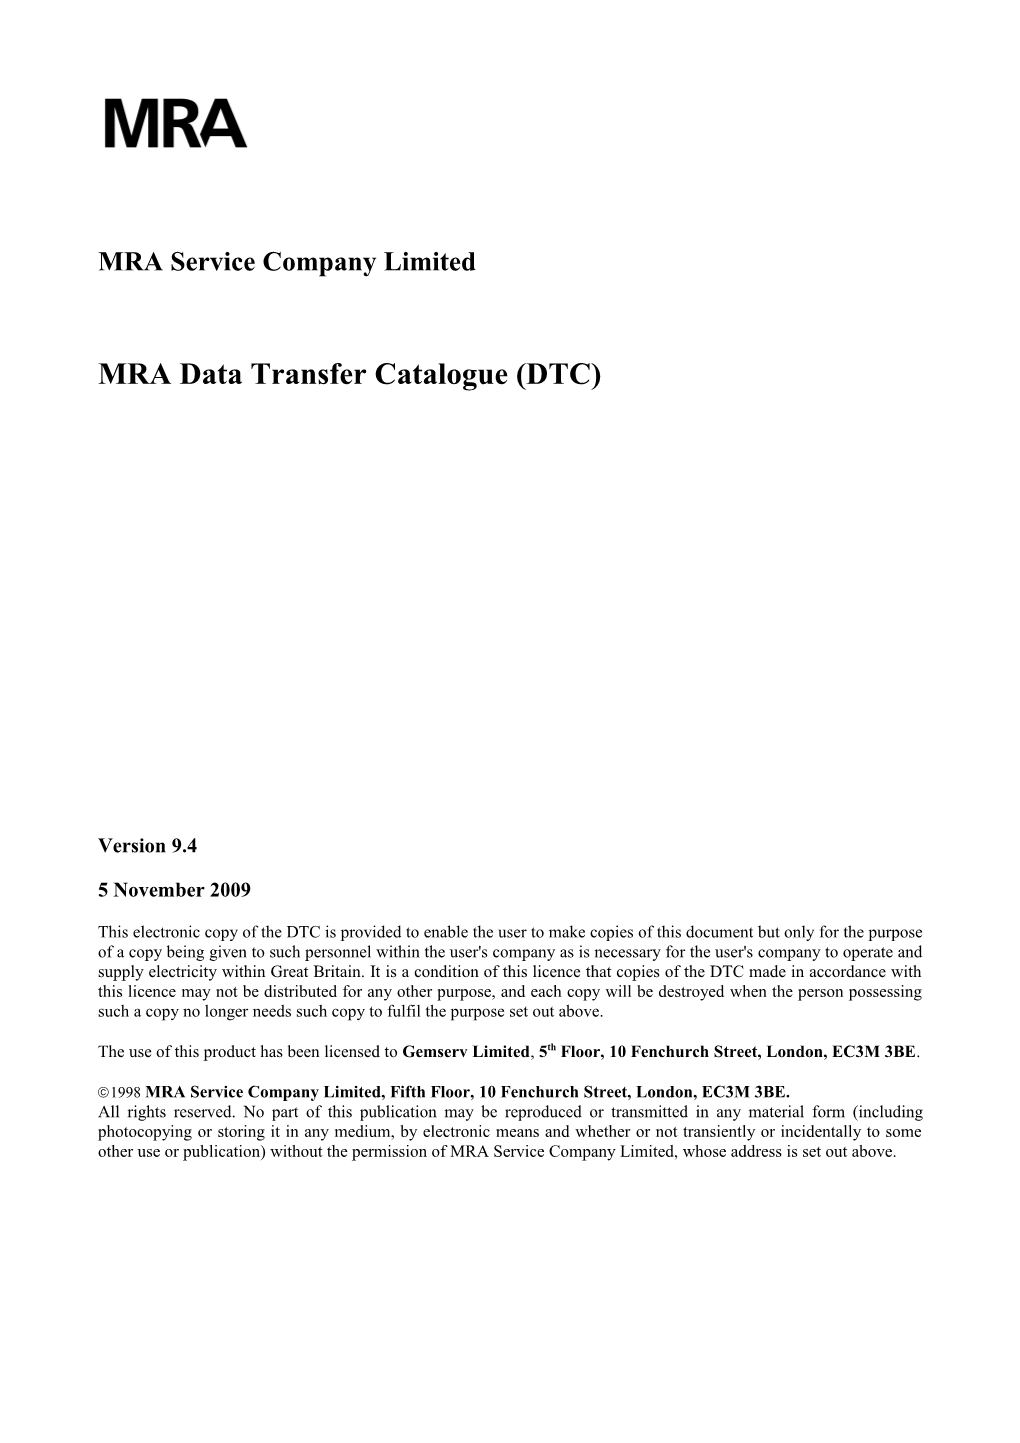 MRA Data Transfer Catalogue